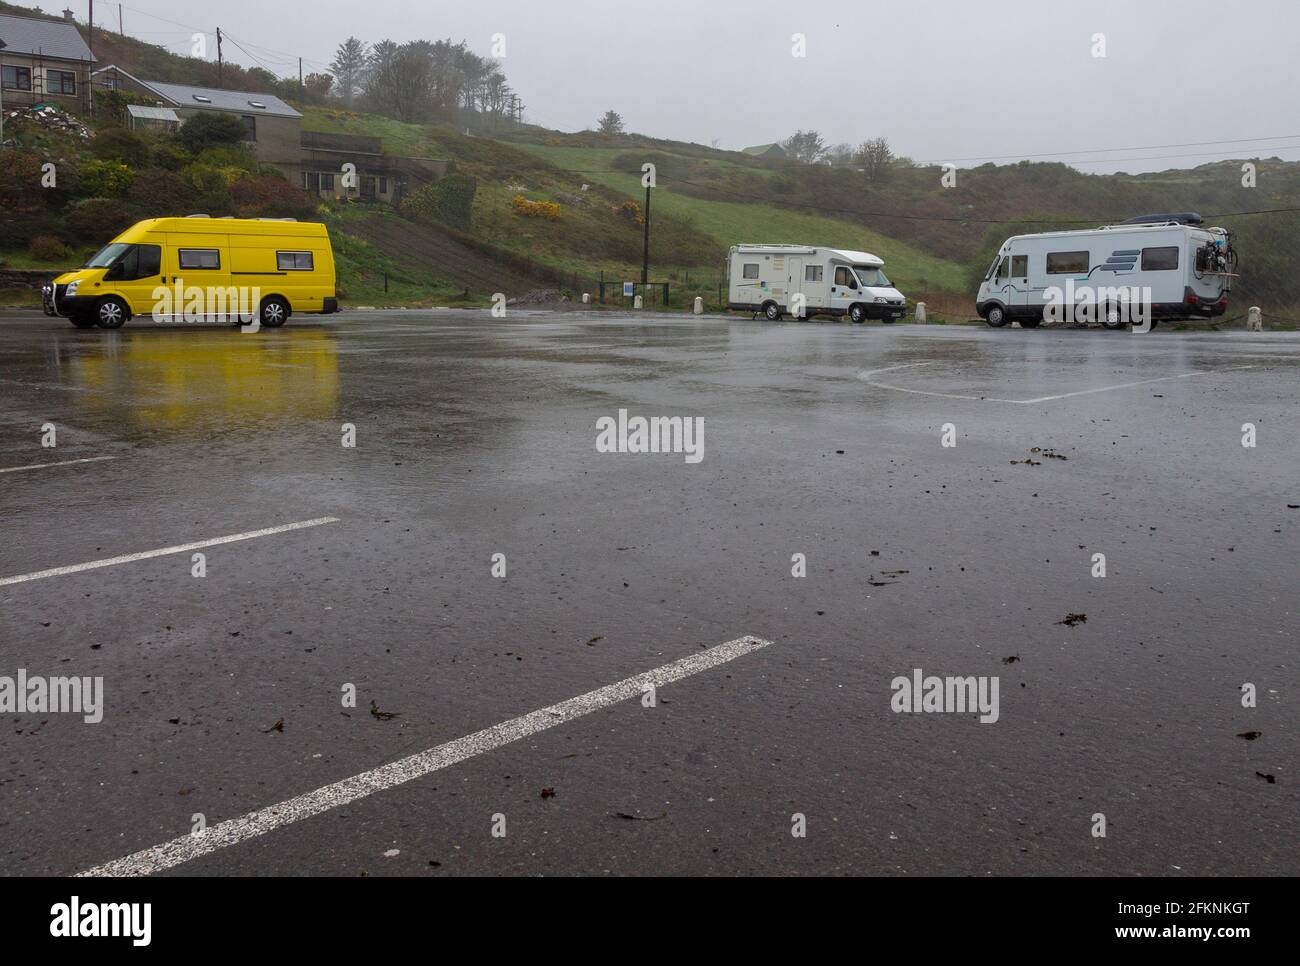 Wohnmobile oder Wohnmobile, die während eines Regensturms geparkt sind, Tragumna, Irland Stockfoto